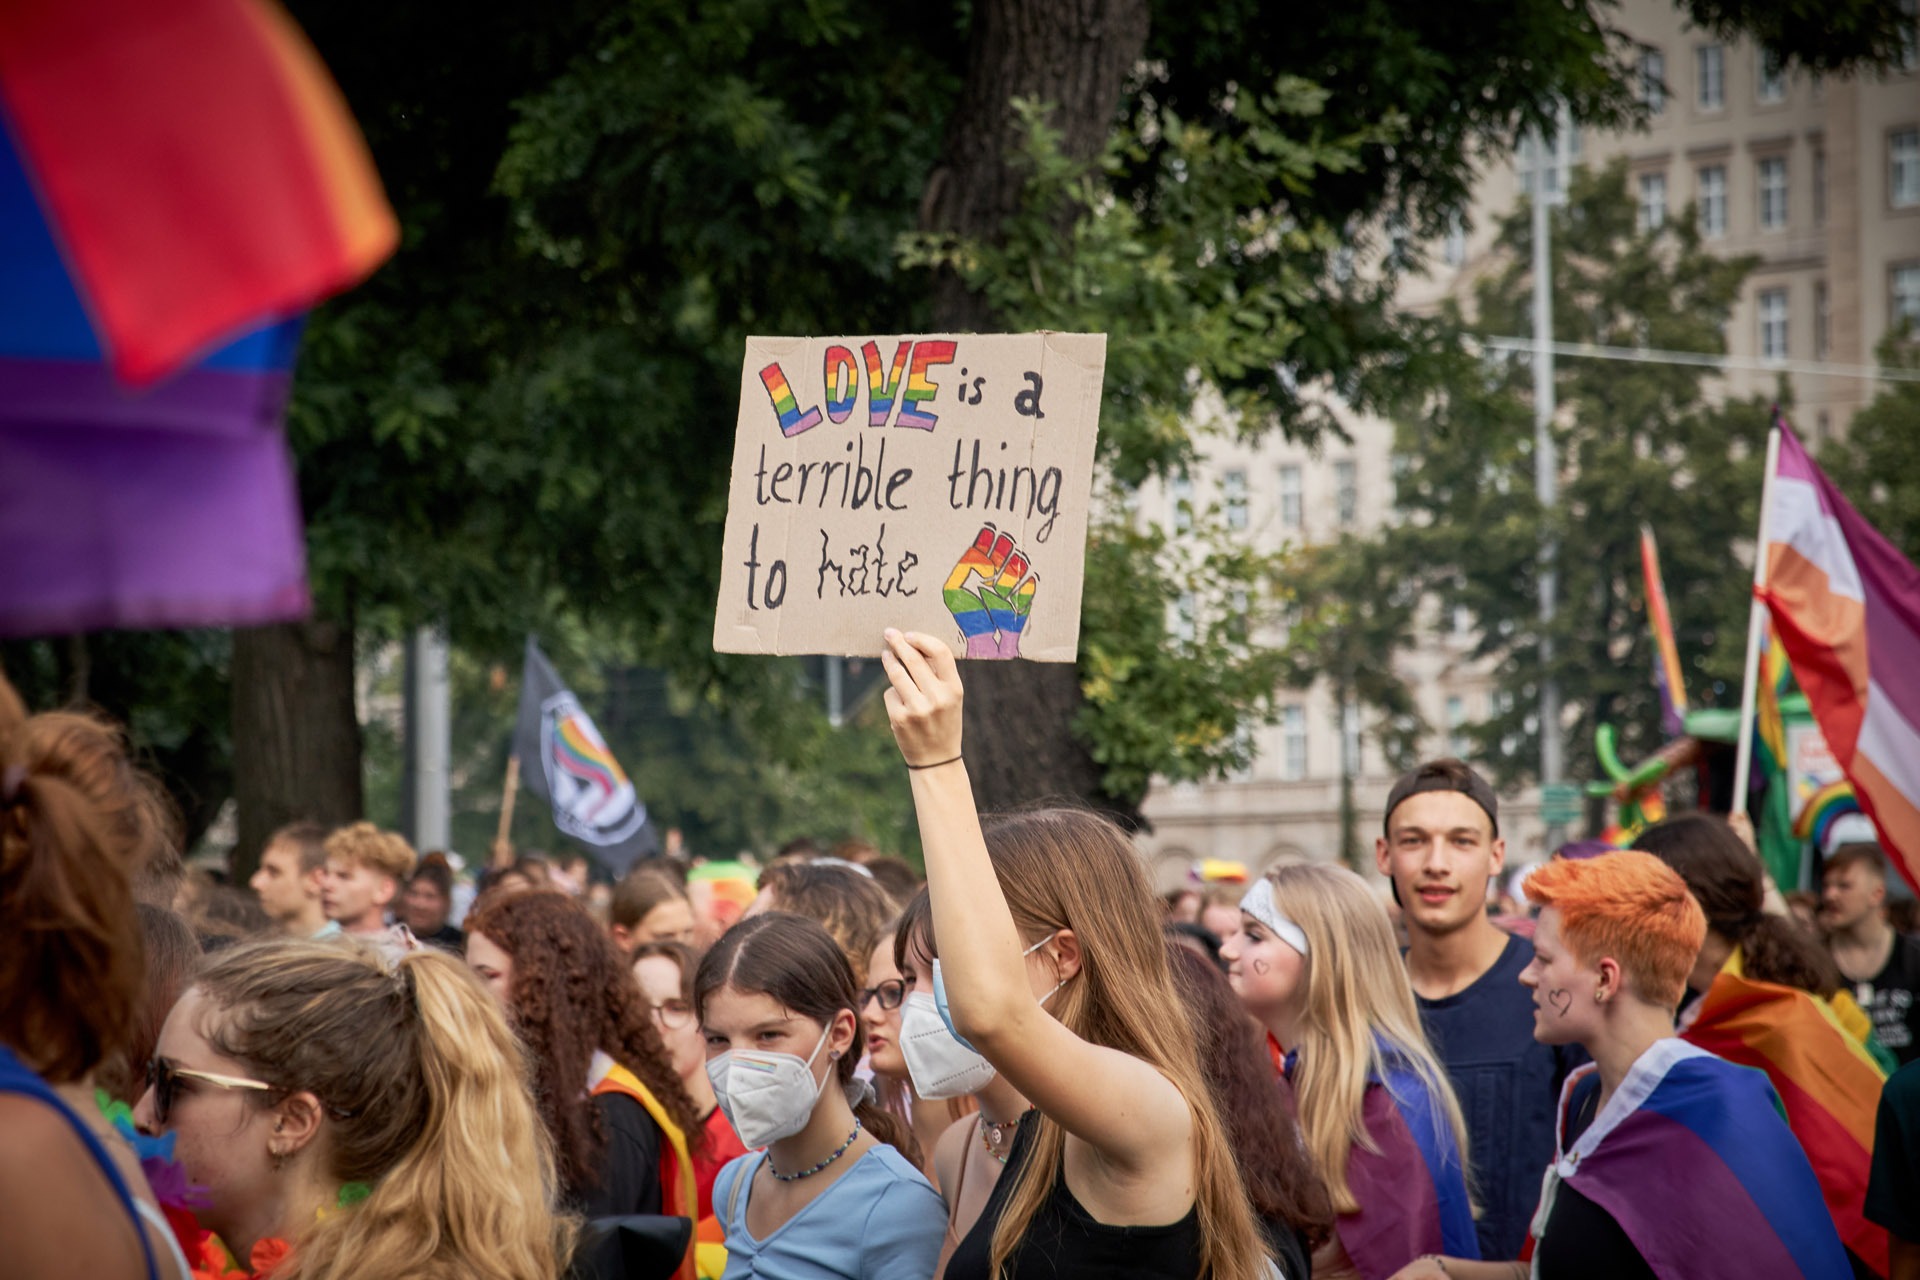 Demo-Schild mit der Aufschrift "Love is a terrible thing to hate"